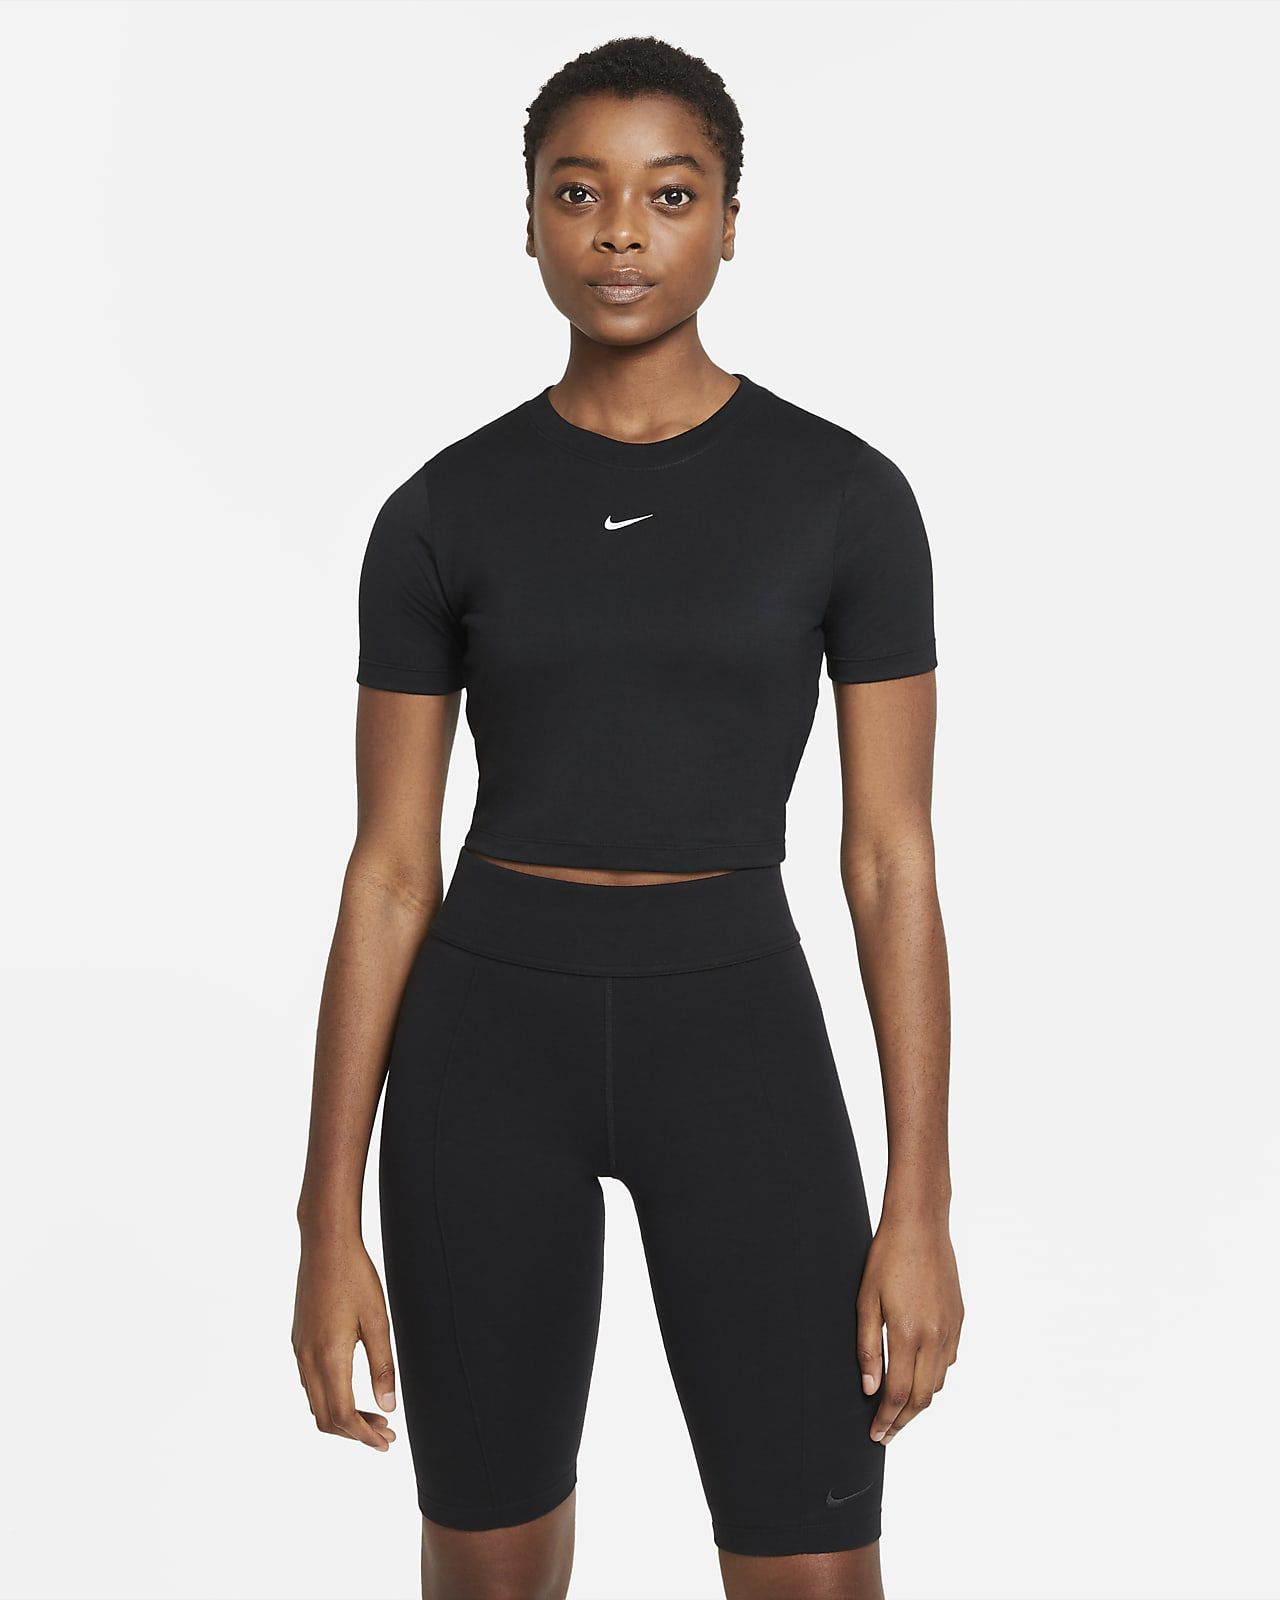 Women's Crop Top | Nike (US)